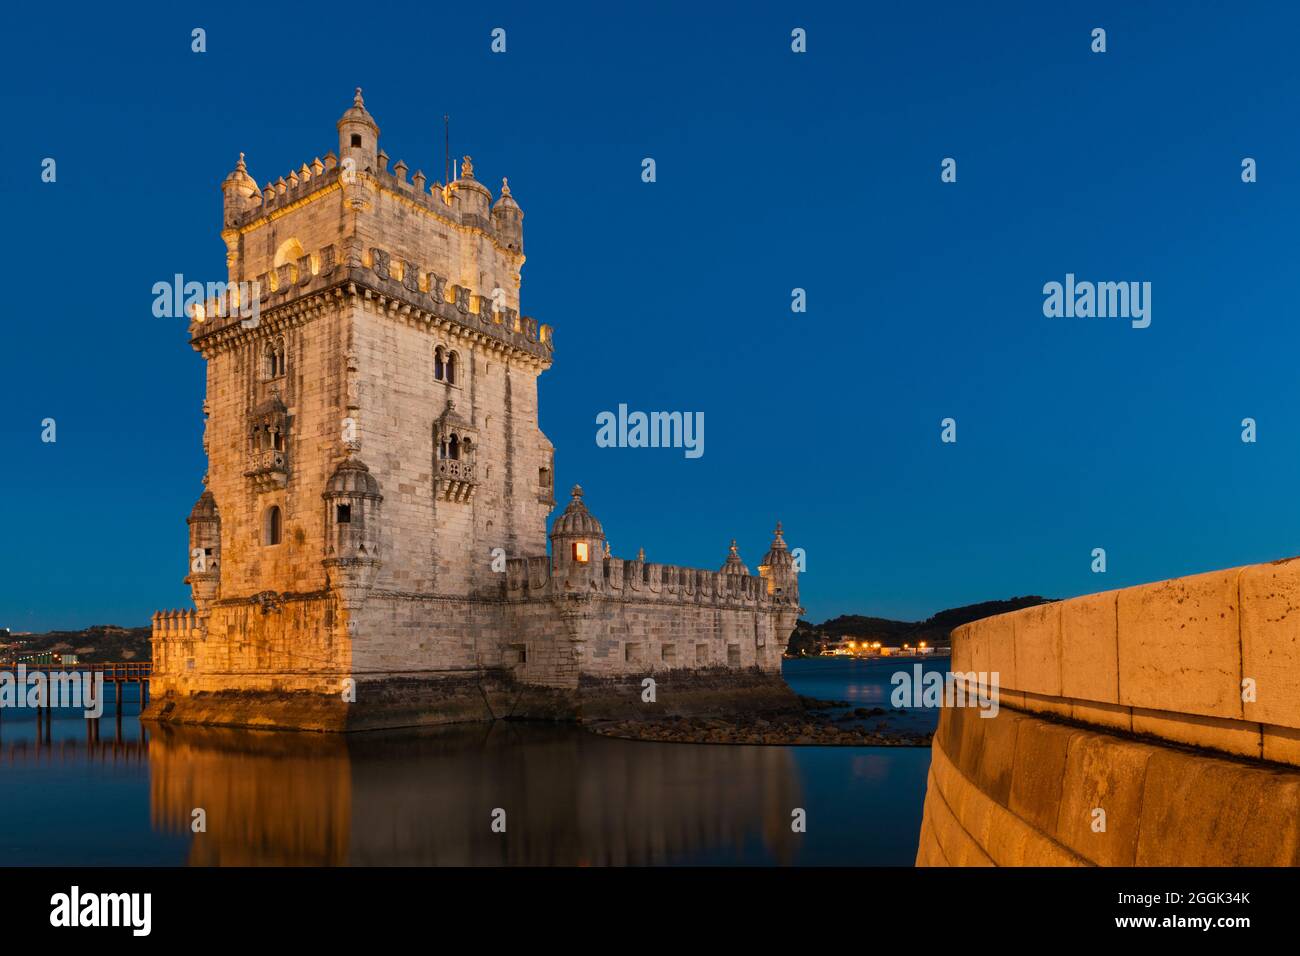 Vista de la emblemática Torre de Belem (Torre de Belem) a orillas del río Tajo, en la ciudad de Lisboa, Portugal. Foto de stock